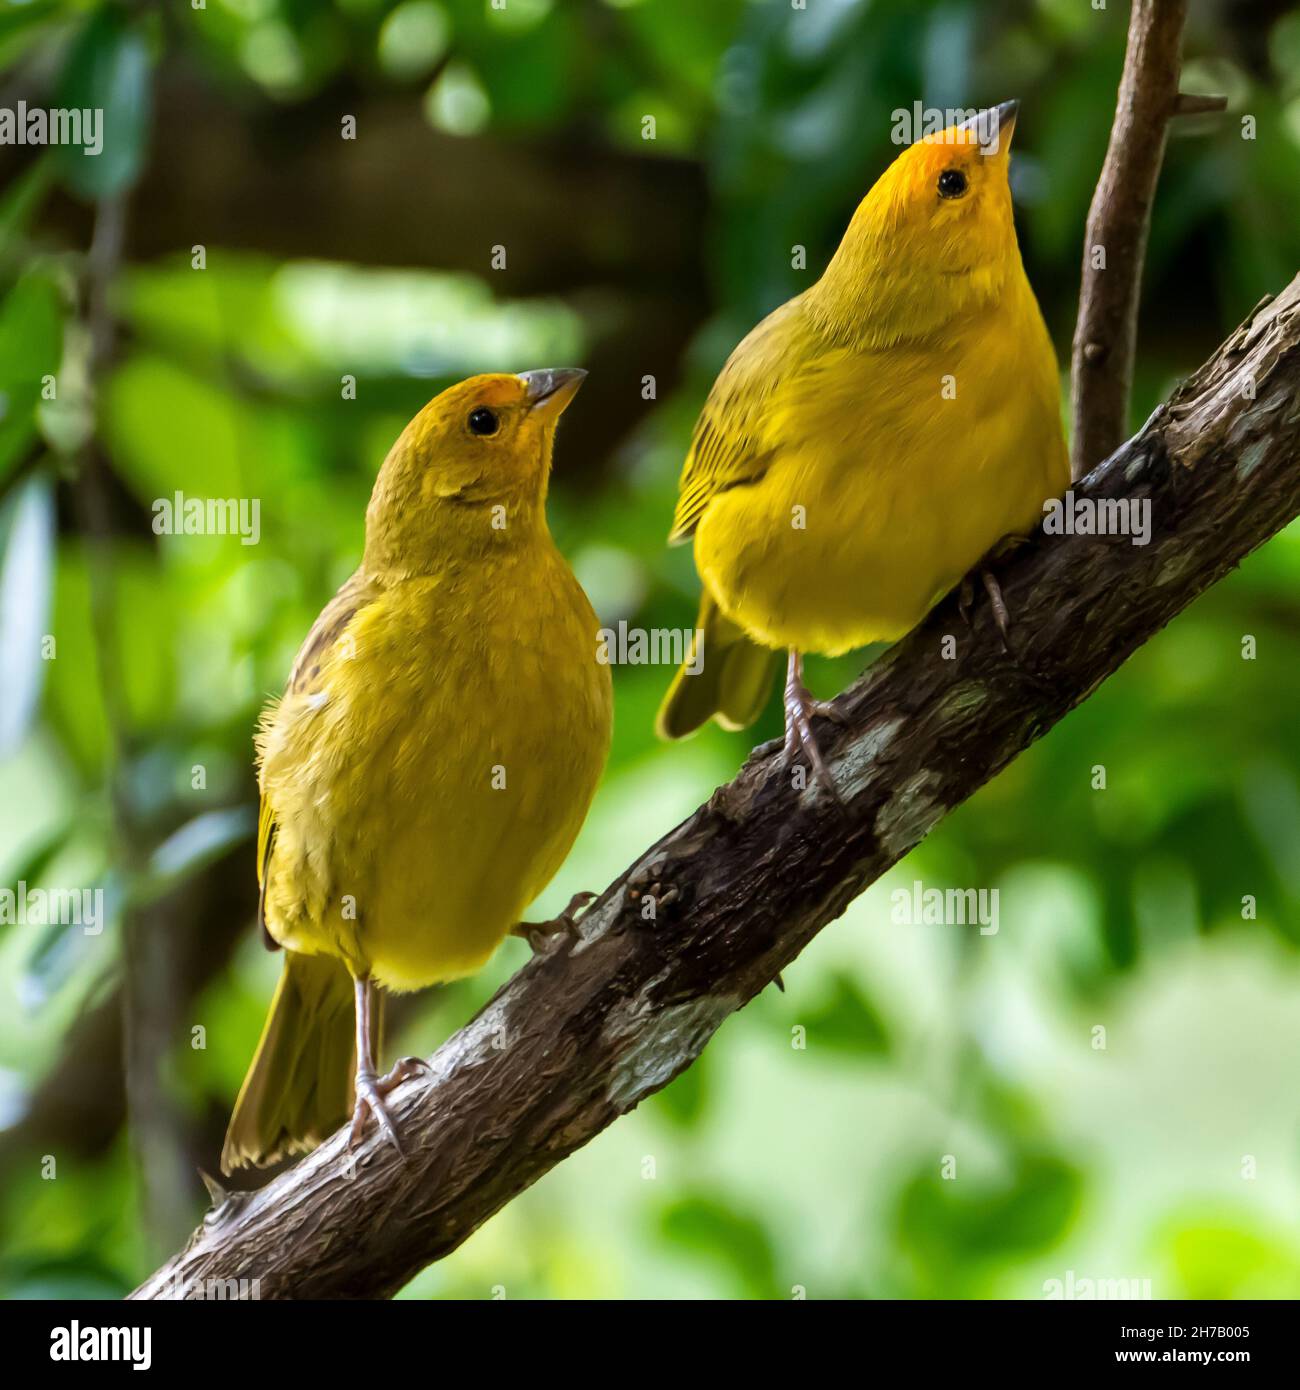 Atlantischer Kanarienvögel, ein kleiner brasilianischer Wildvögel. Der gelbe kanarienvögel Crithagra flaviventris ist ein kleiner Singvögel aus der Familie der Finken. Stockfoto